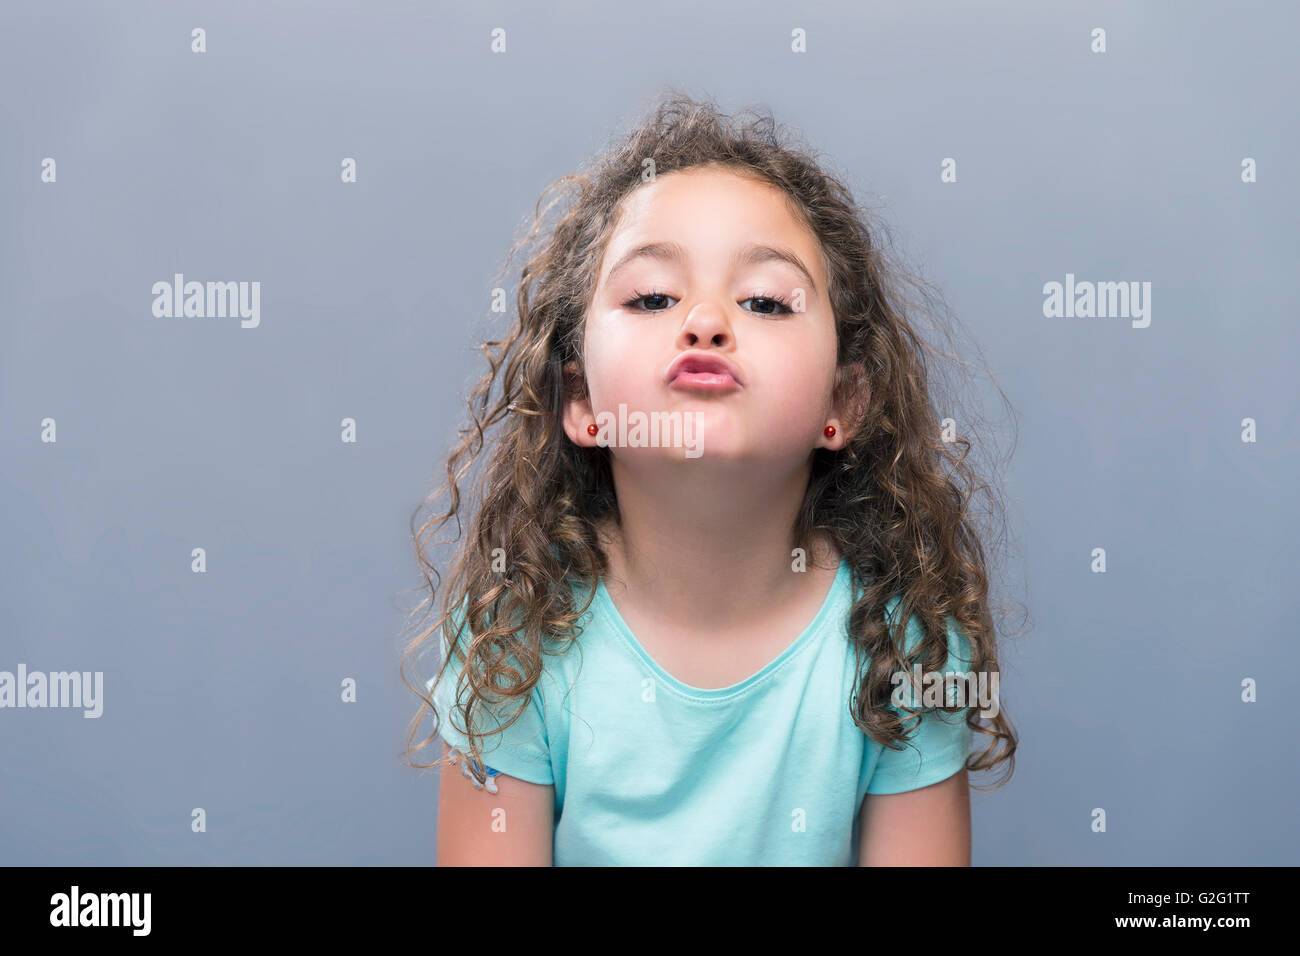 Porträt von kleinen Mädchen mit lockigen Haaren machen Luft Kuss auf Kamera. Studio gedreht Stockfoto